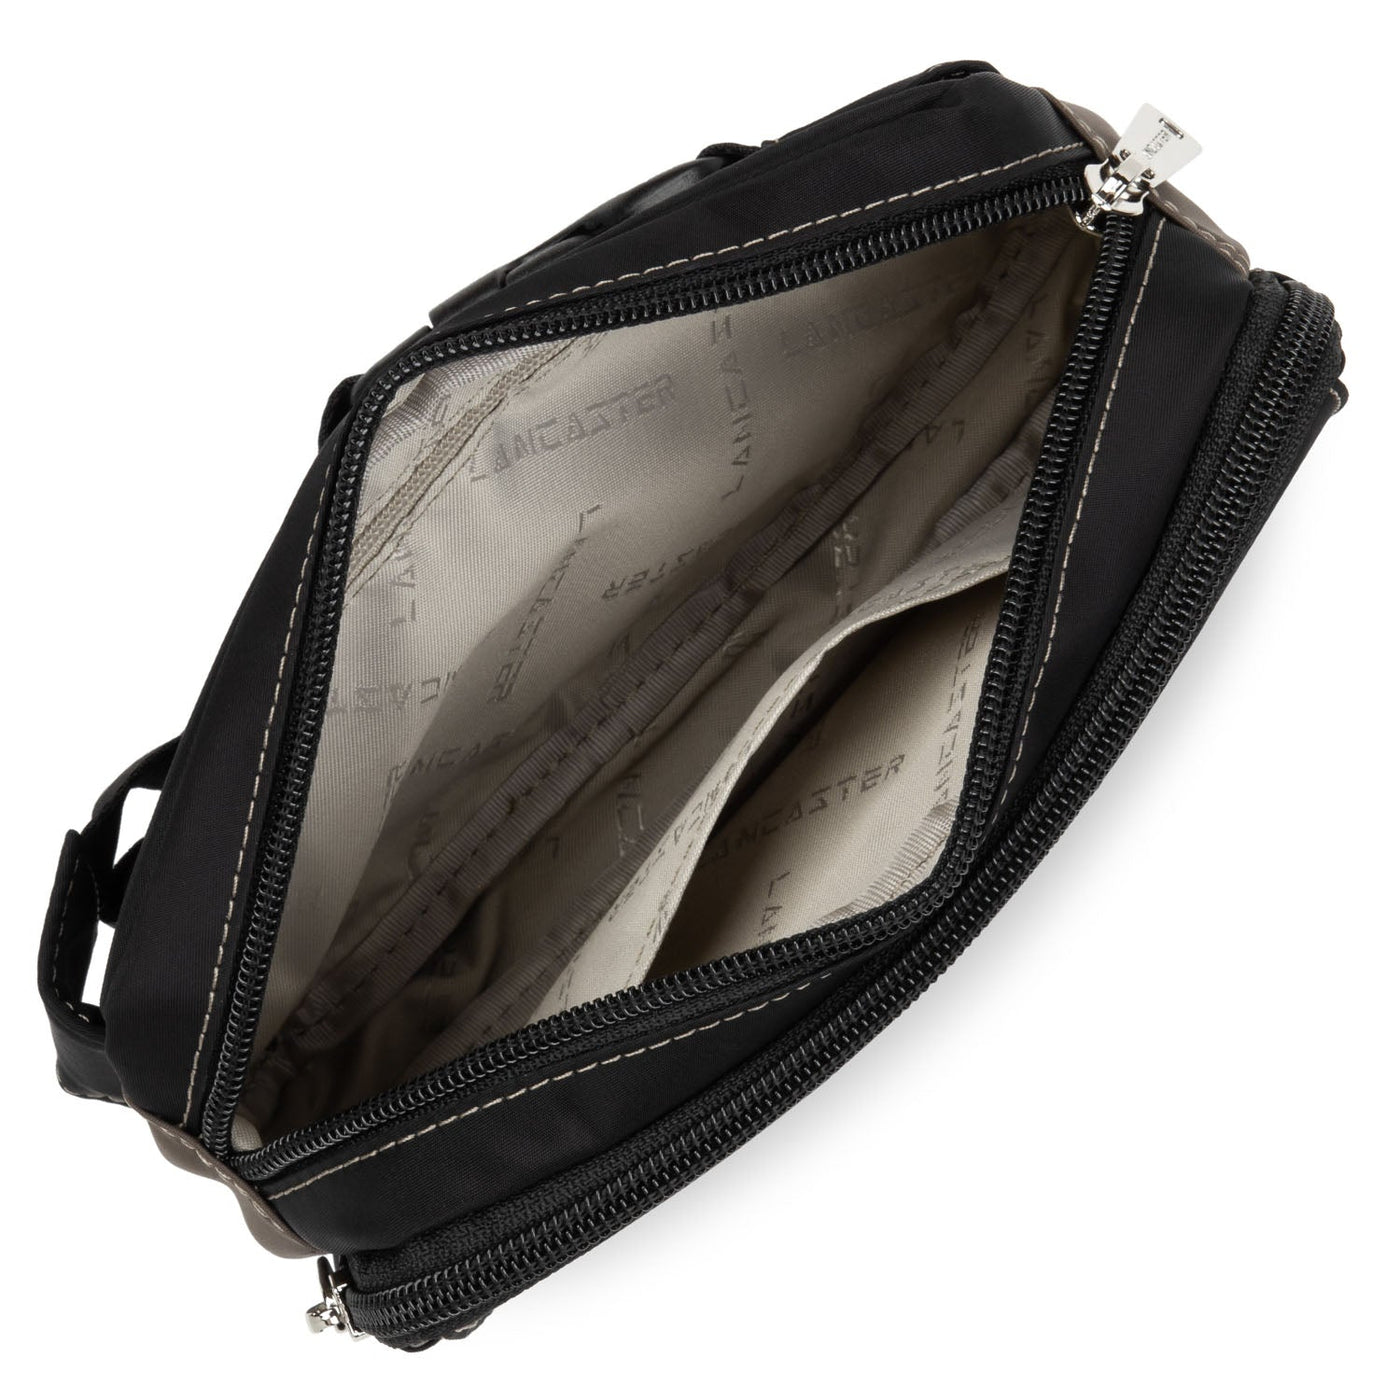 belt bag - basic sport #couleur_noir-taupe-galet